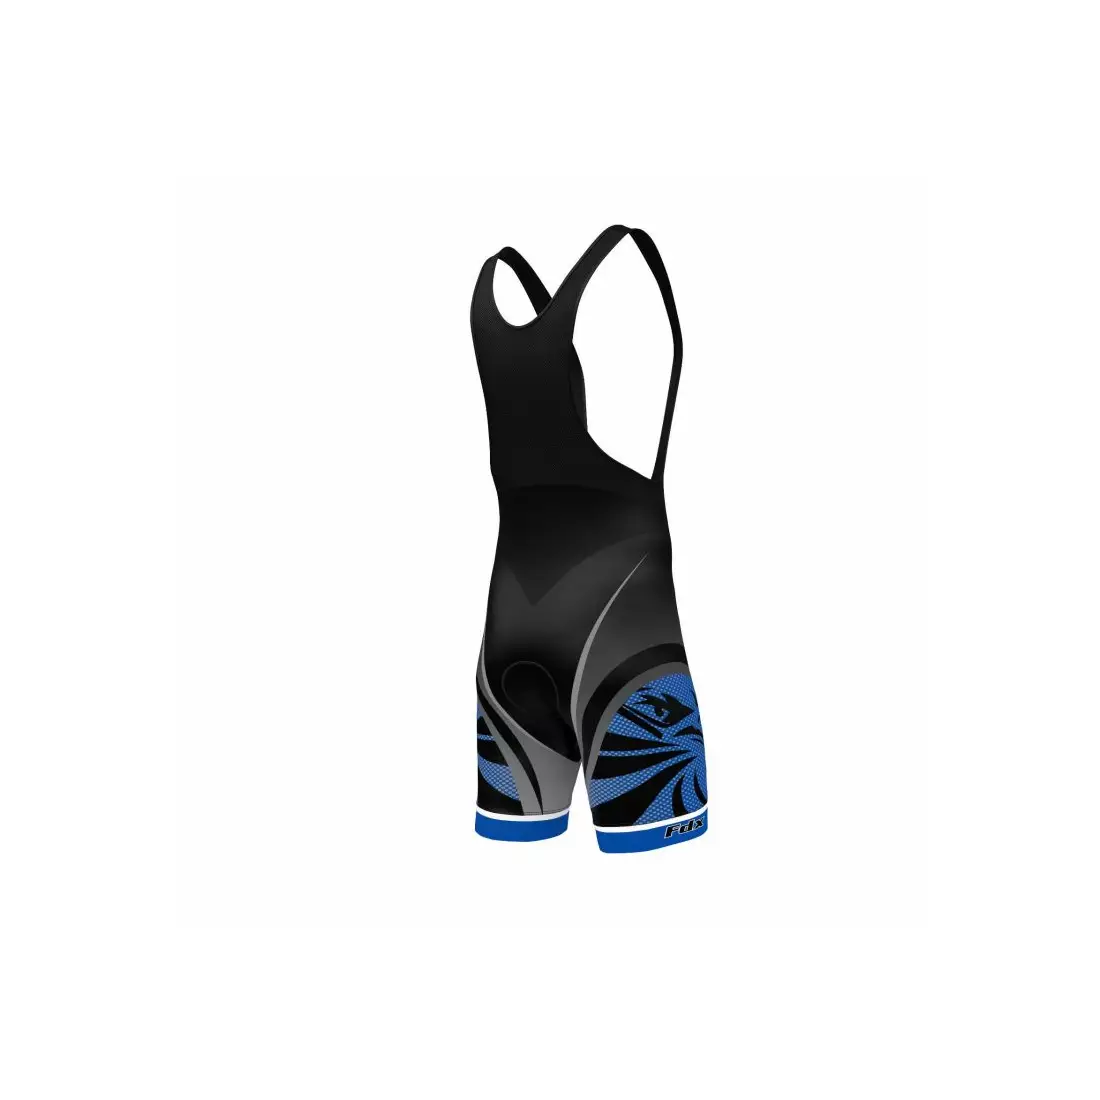 FDX 1060 cycling set: cycling jersey + bib shorts with insert, blue